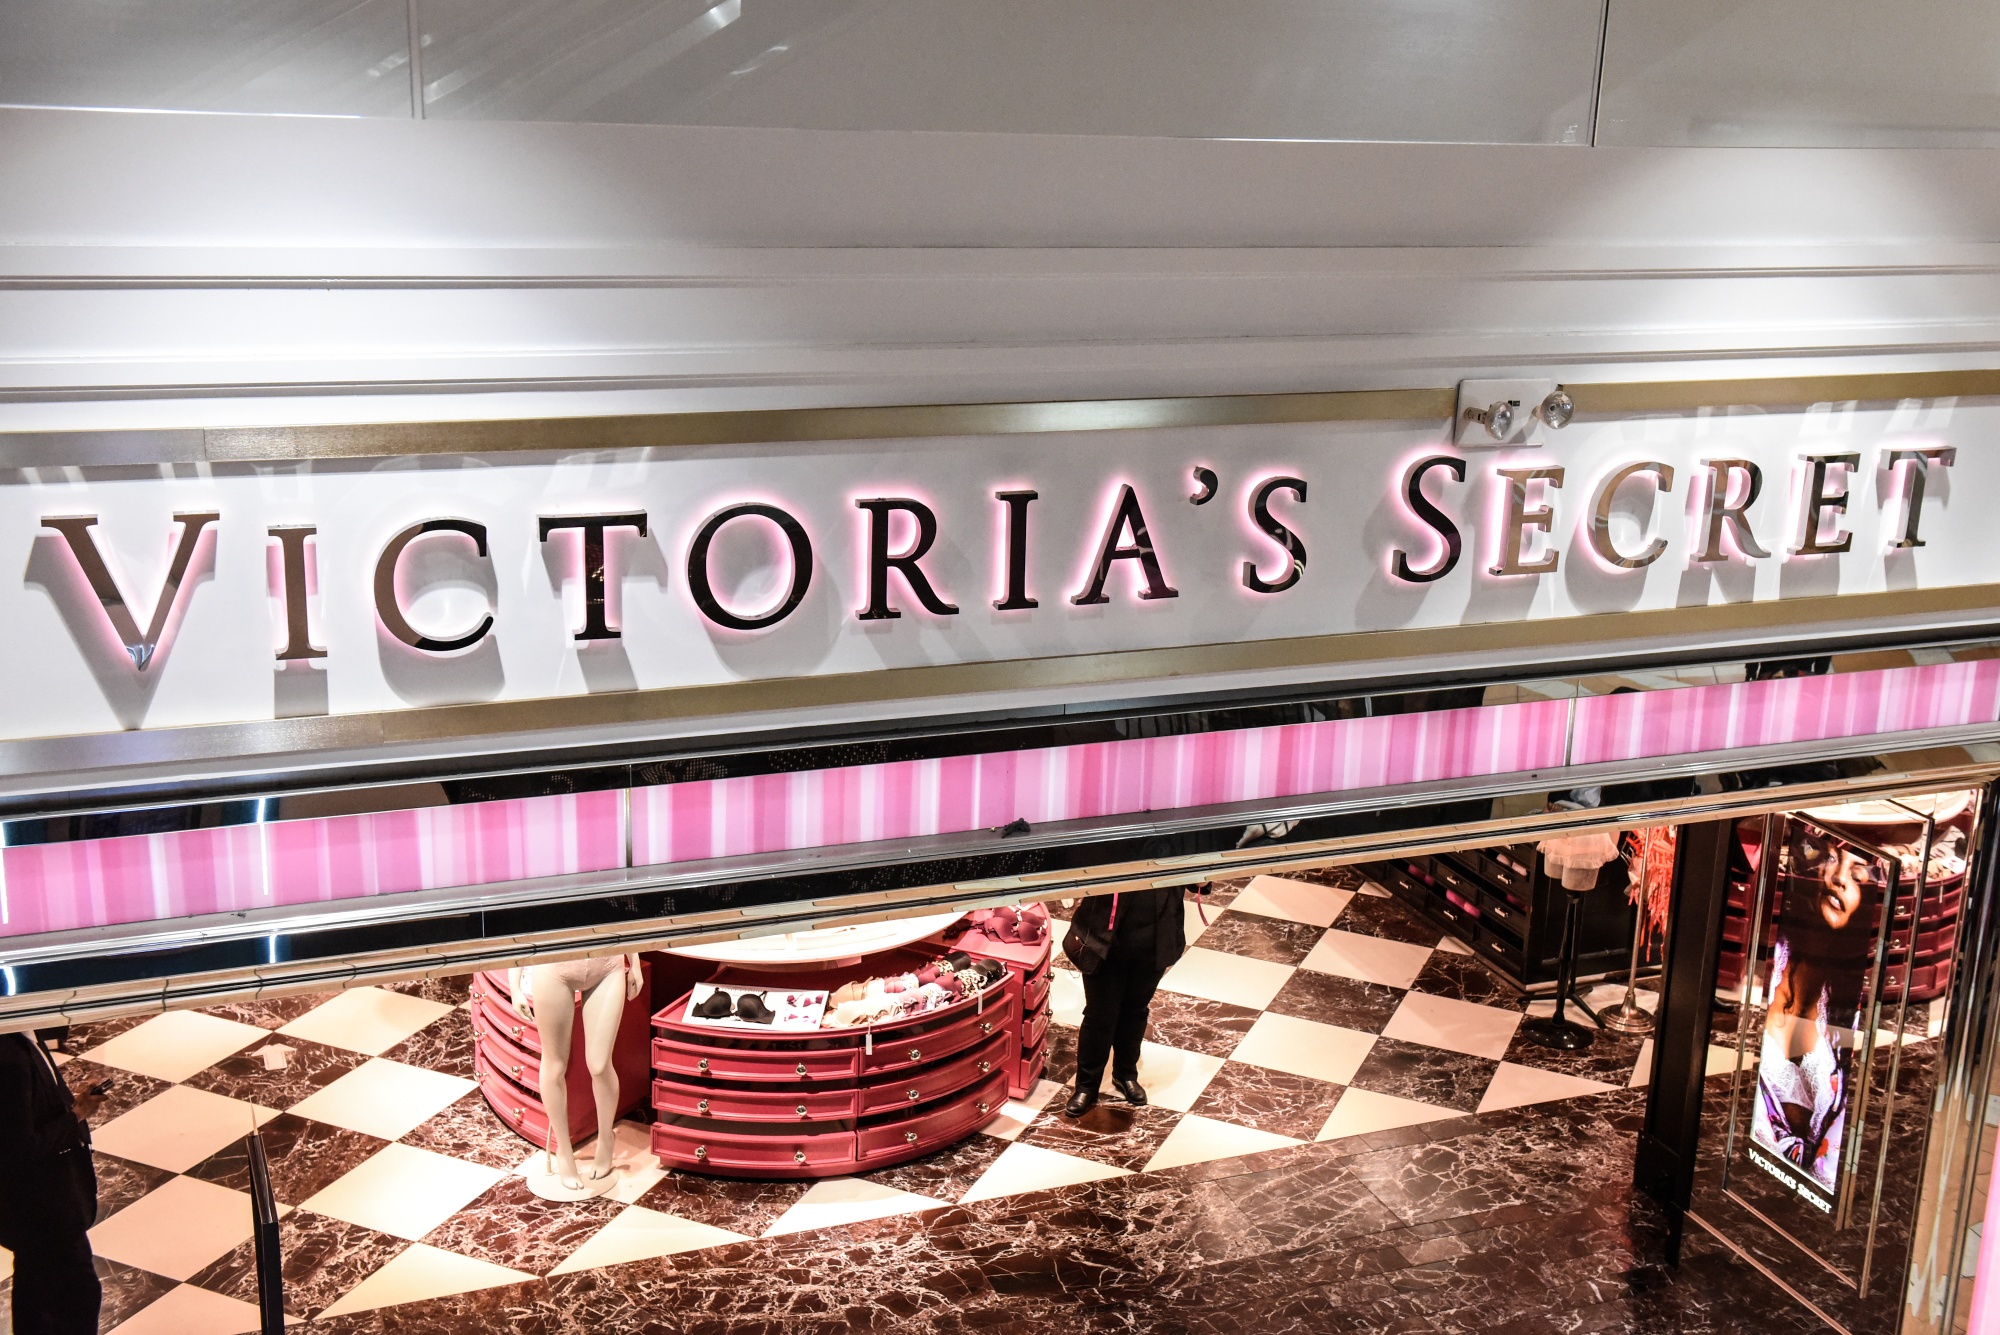 Victoria's Secret's Pink Line Successes